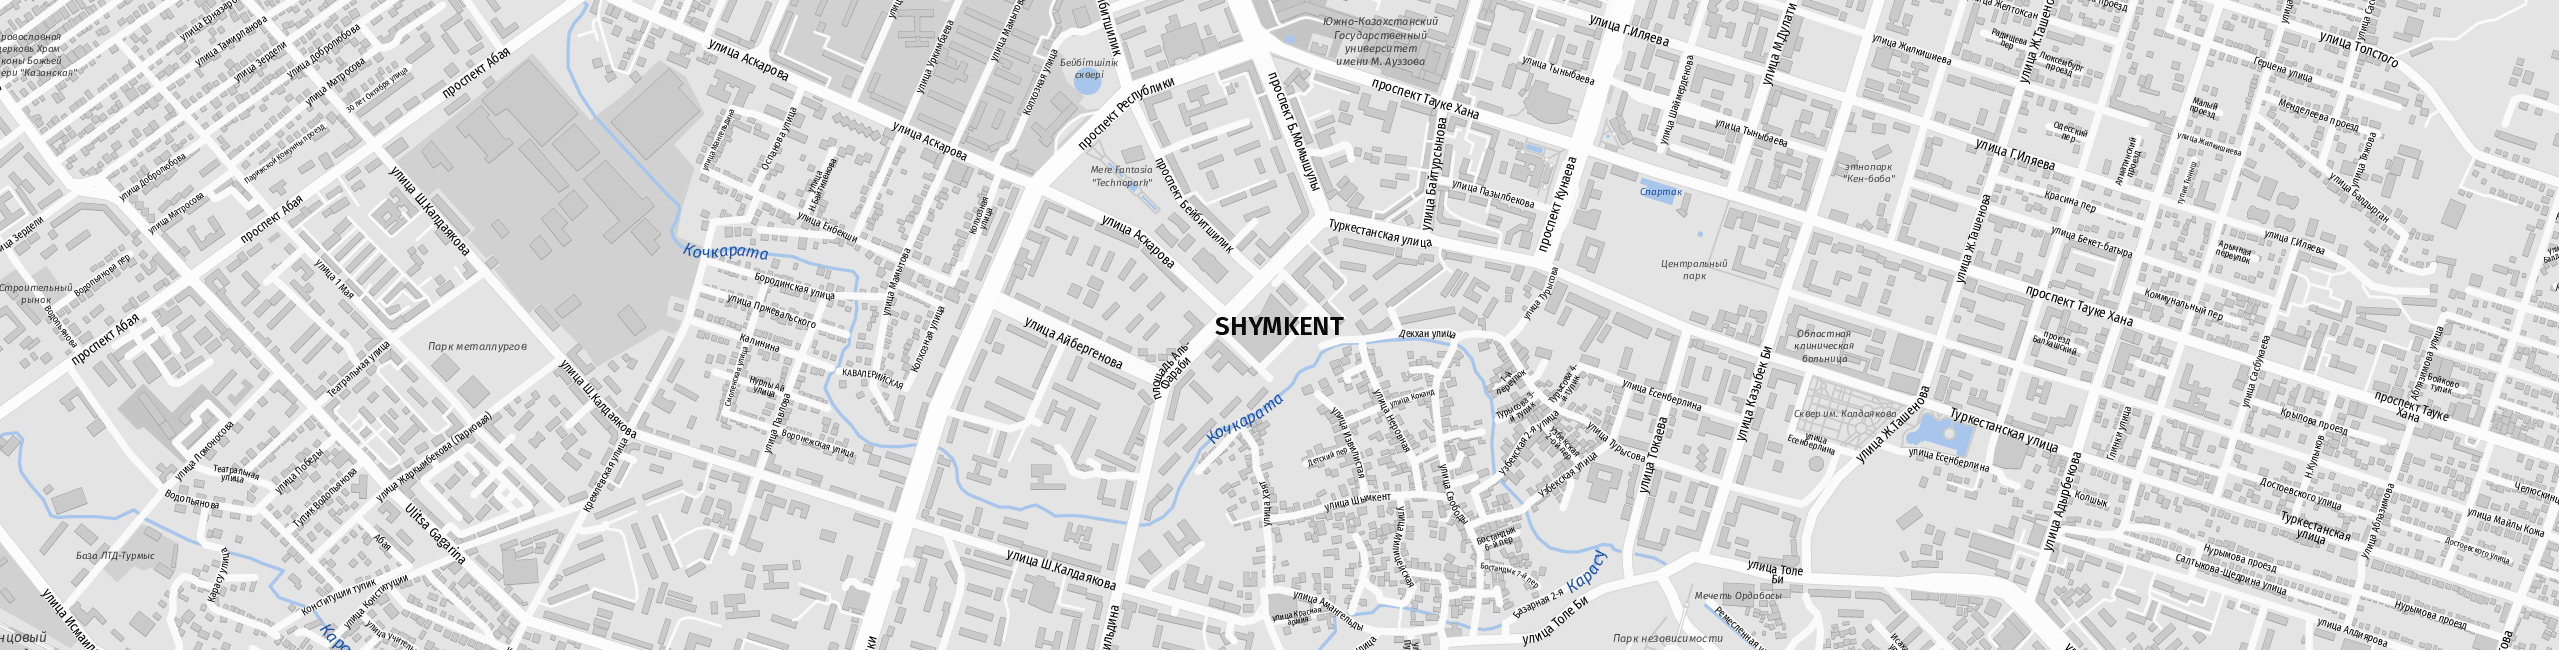 Stadtplan Schymkent zum Downloaden.